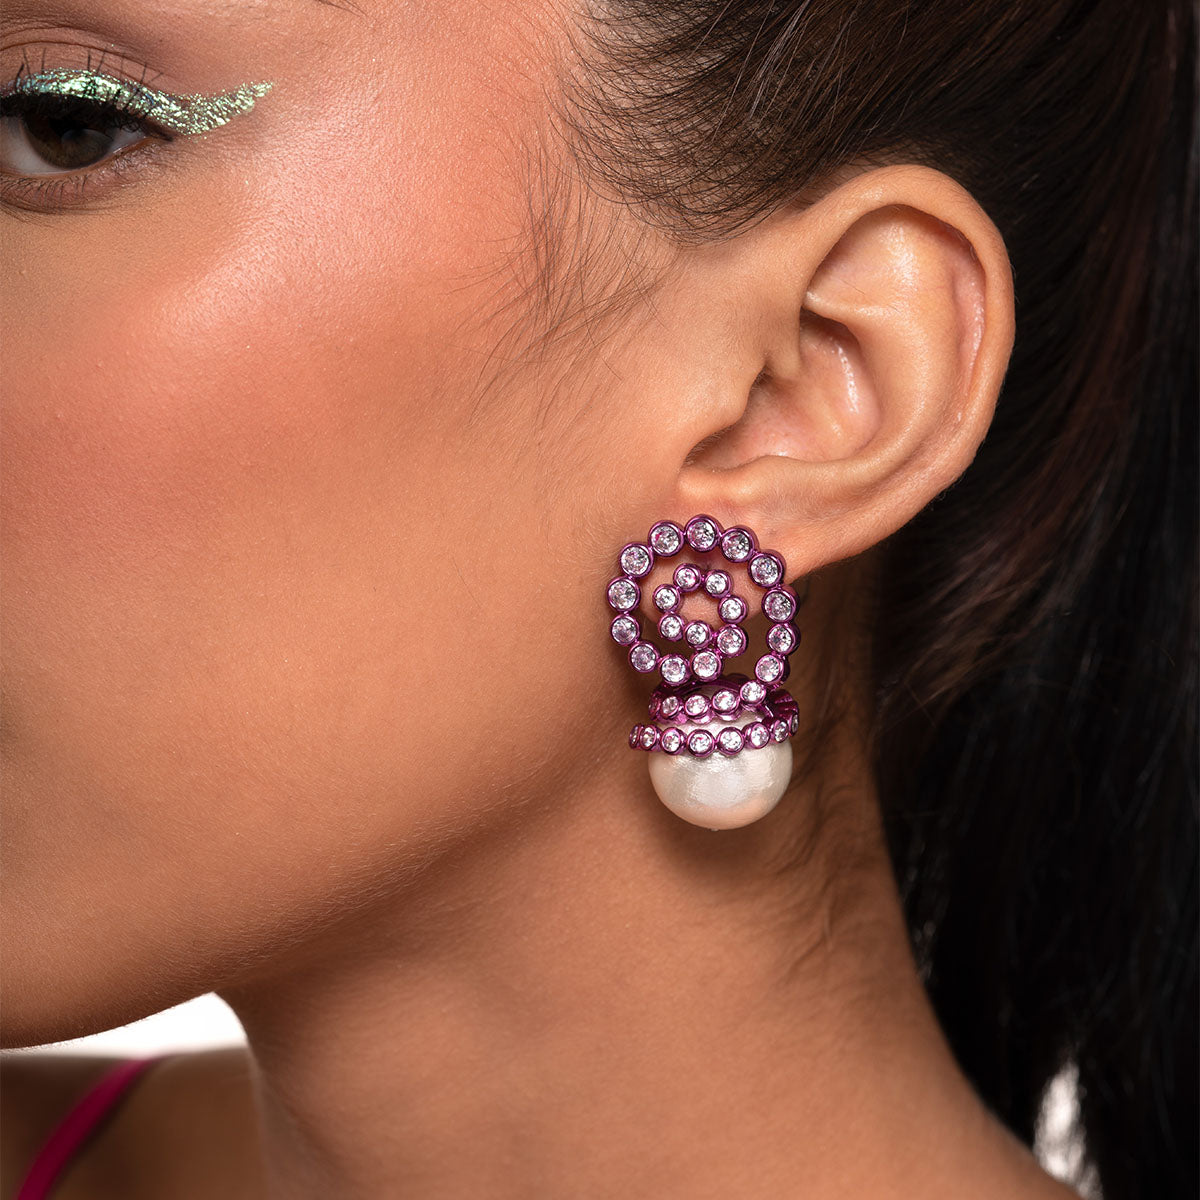 Rani Pink Pearl Drop Earrings - Isharya | Modern Indian Jewelry